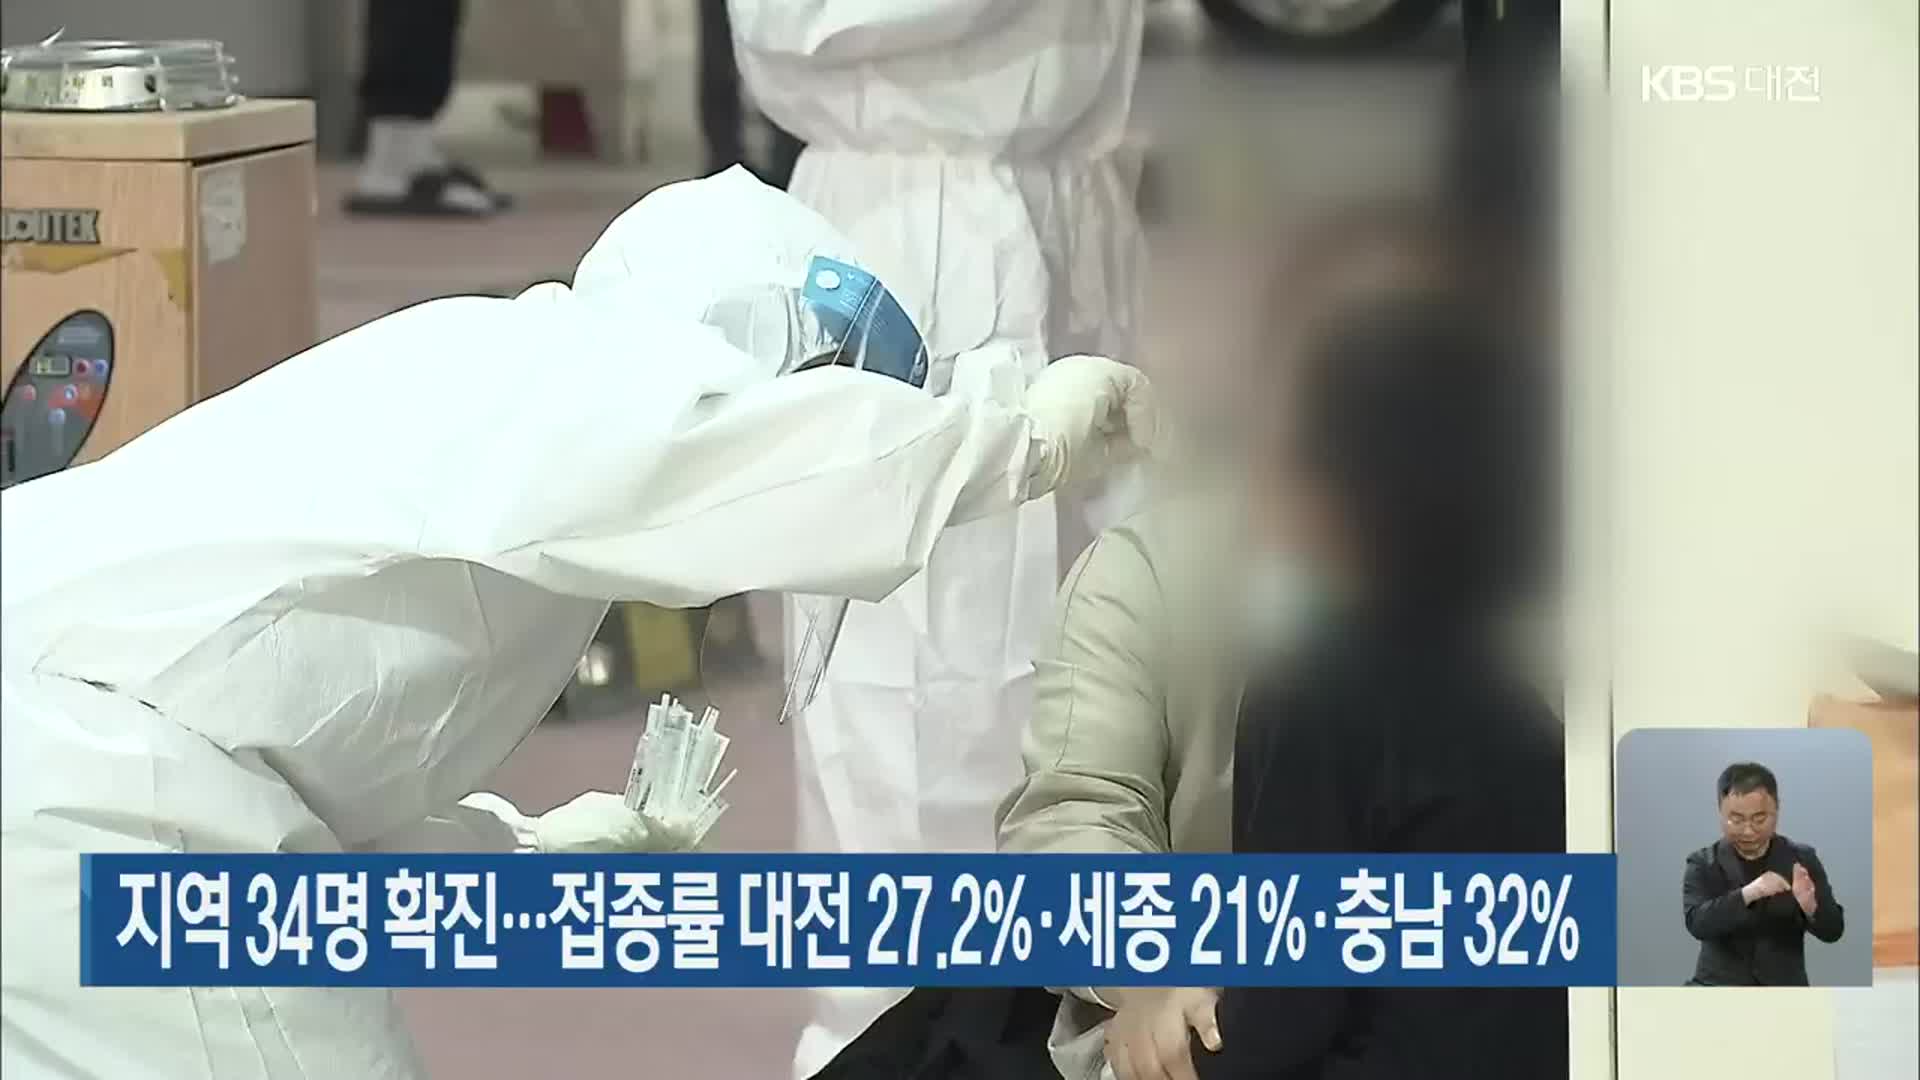 지역 34명 확진…접종률 대전 27.2%·세종 21%·충남 32%